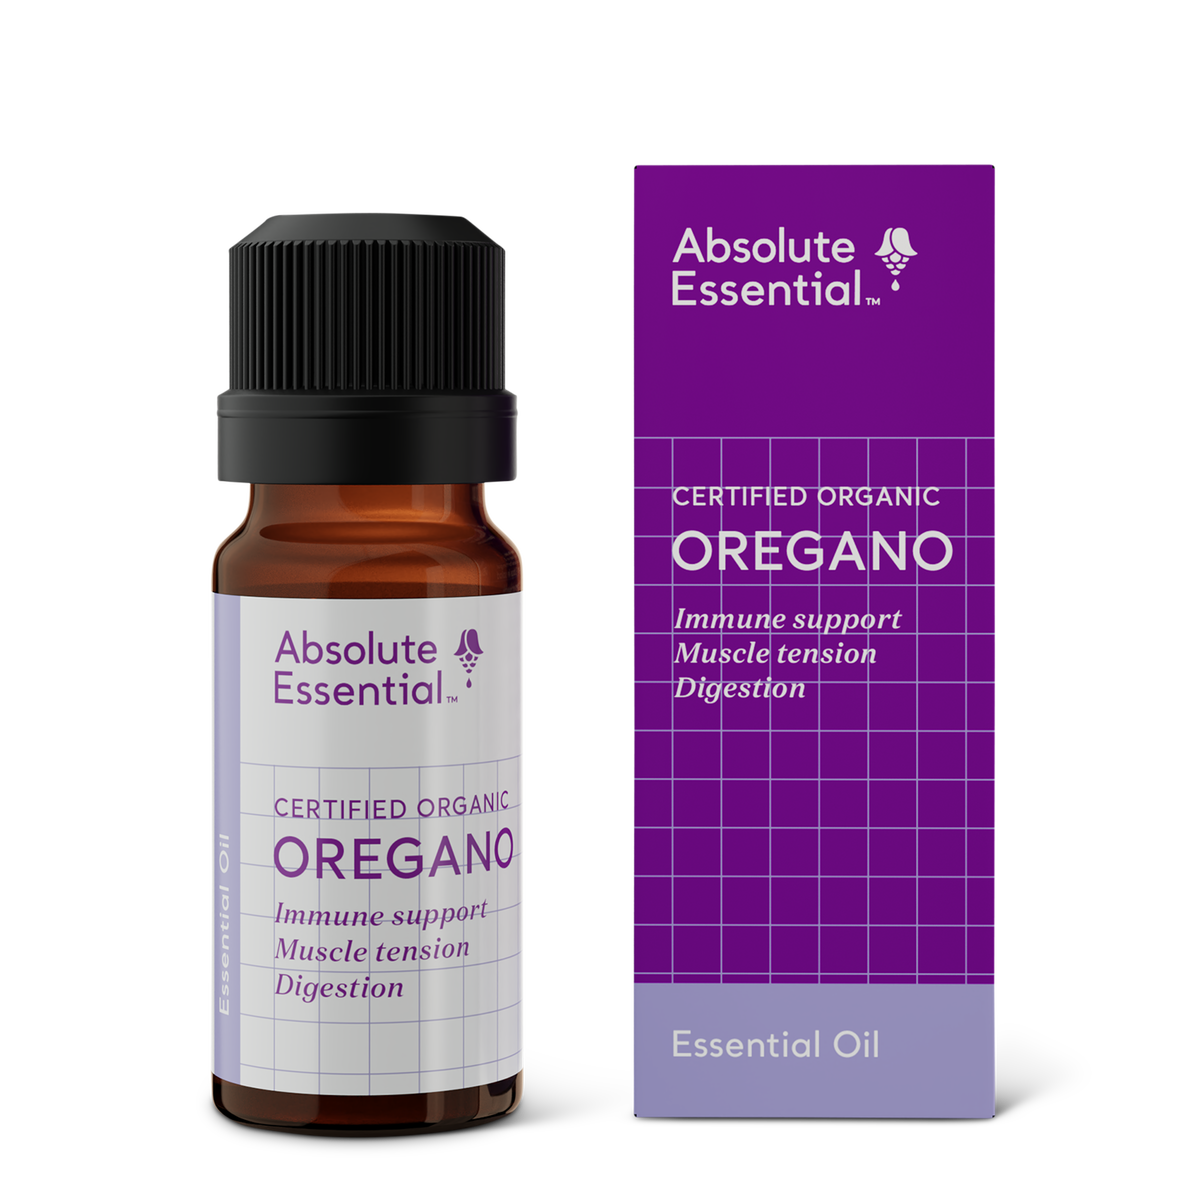 Absolute Essential Oregano Oil